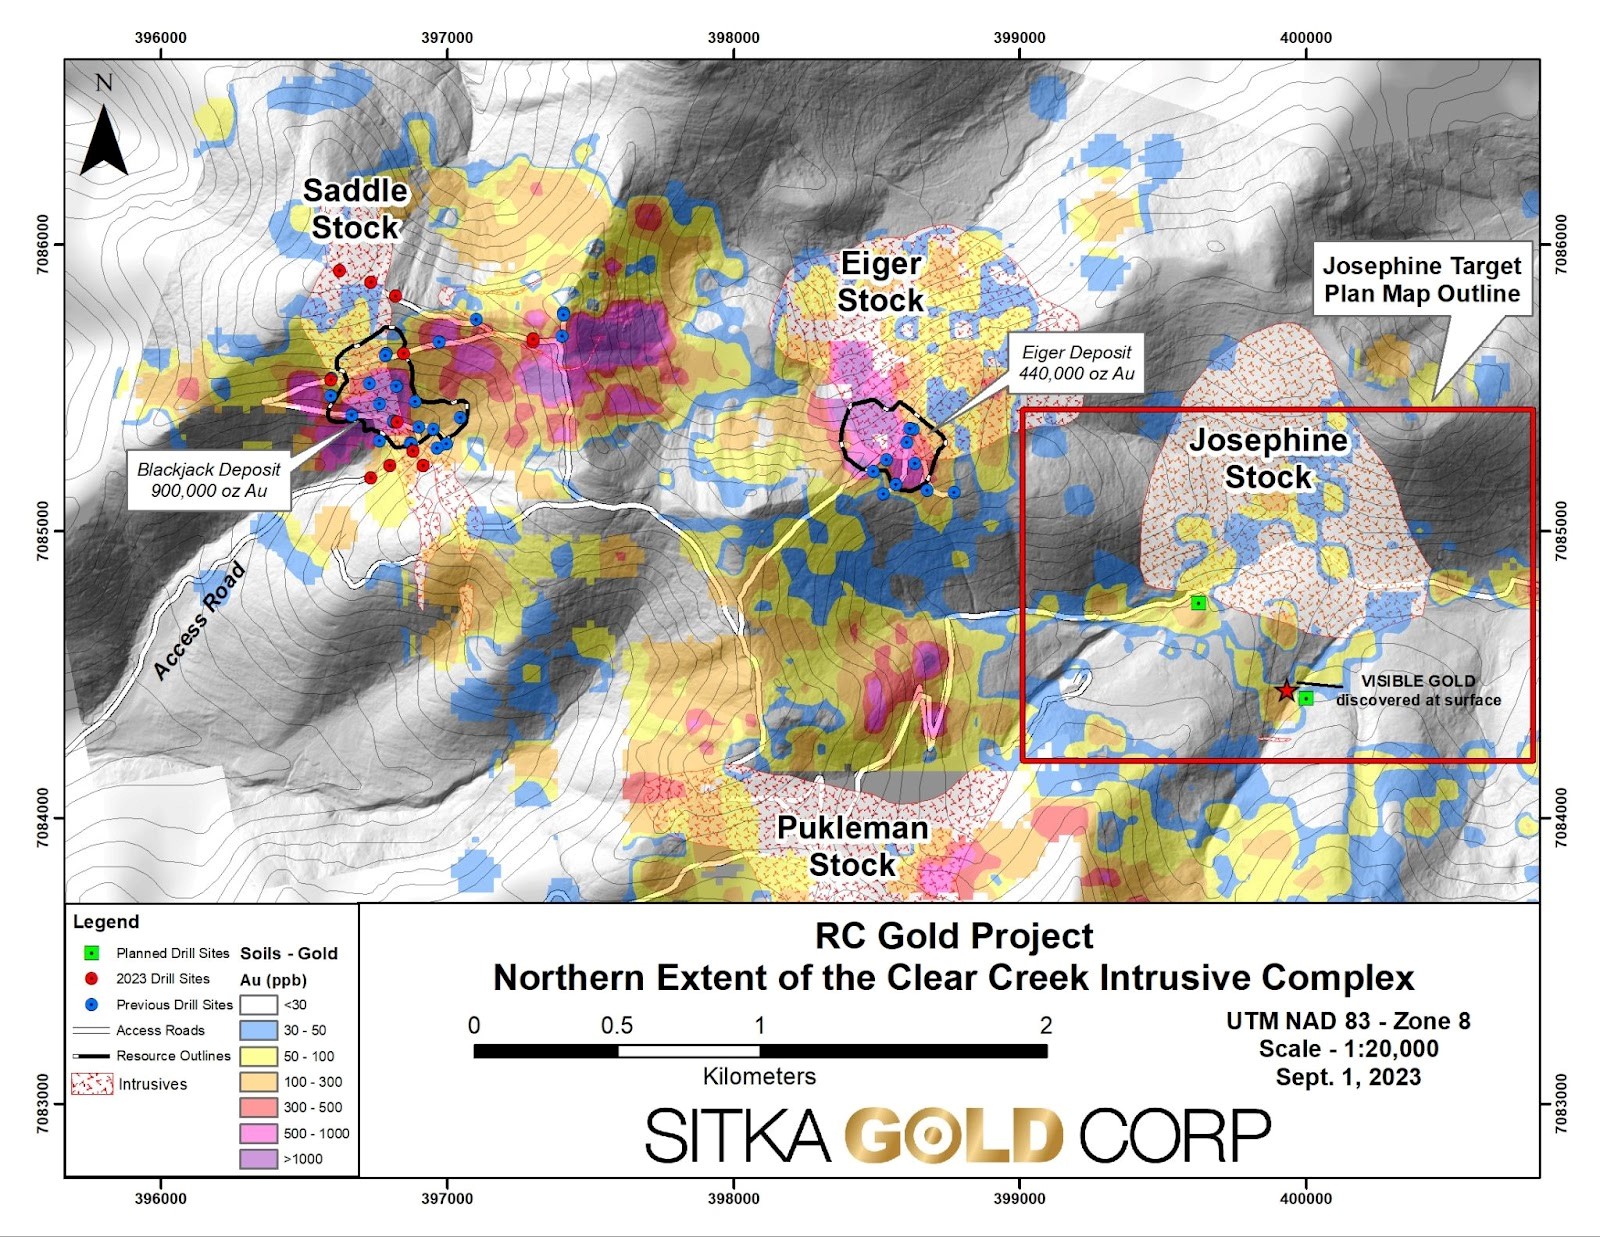 Sitka kann auch hochgradig: 3,81 Unzen Gold auf 1,2 Metern - höchster je gemessener Goldgehalt auf RC-Goldprojekt